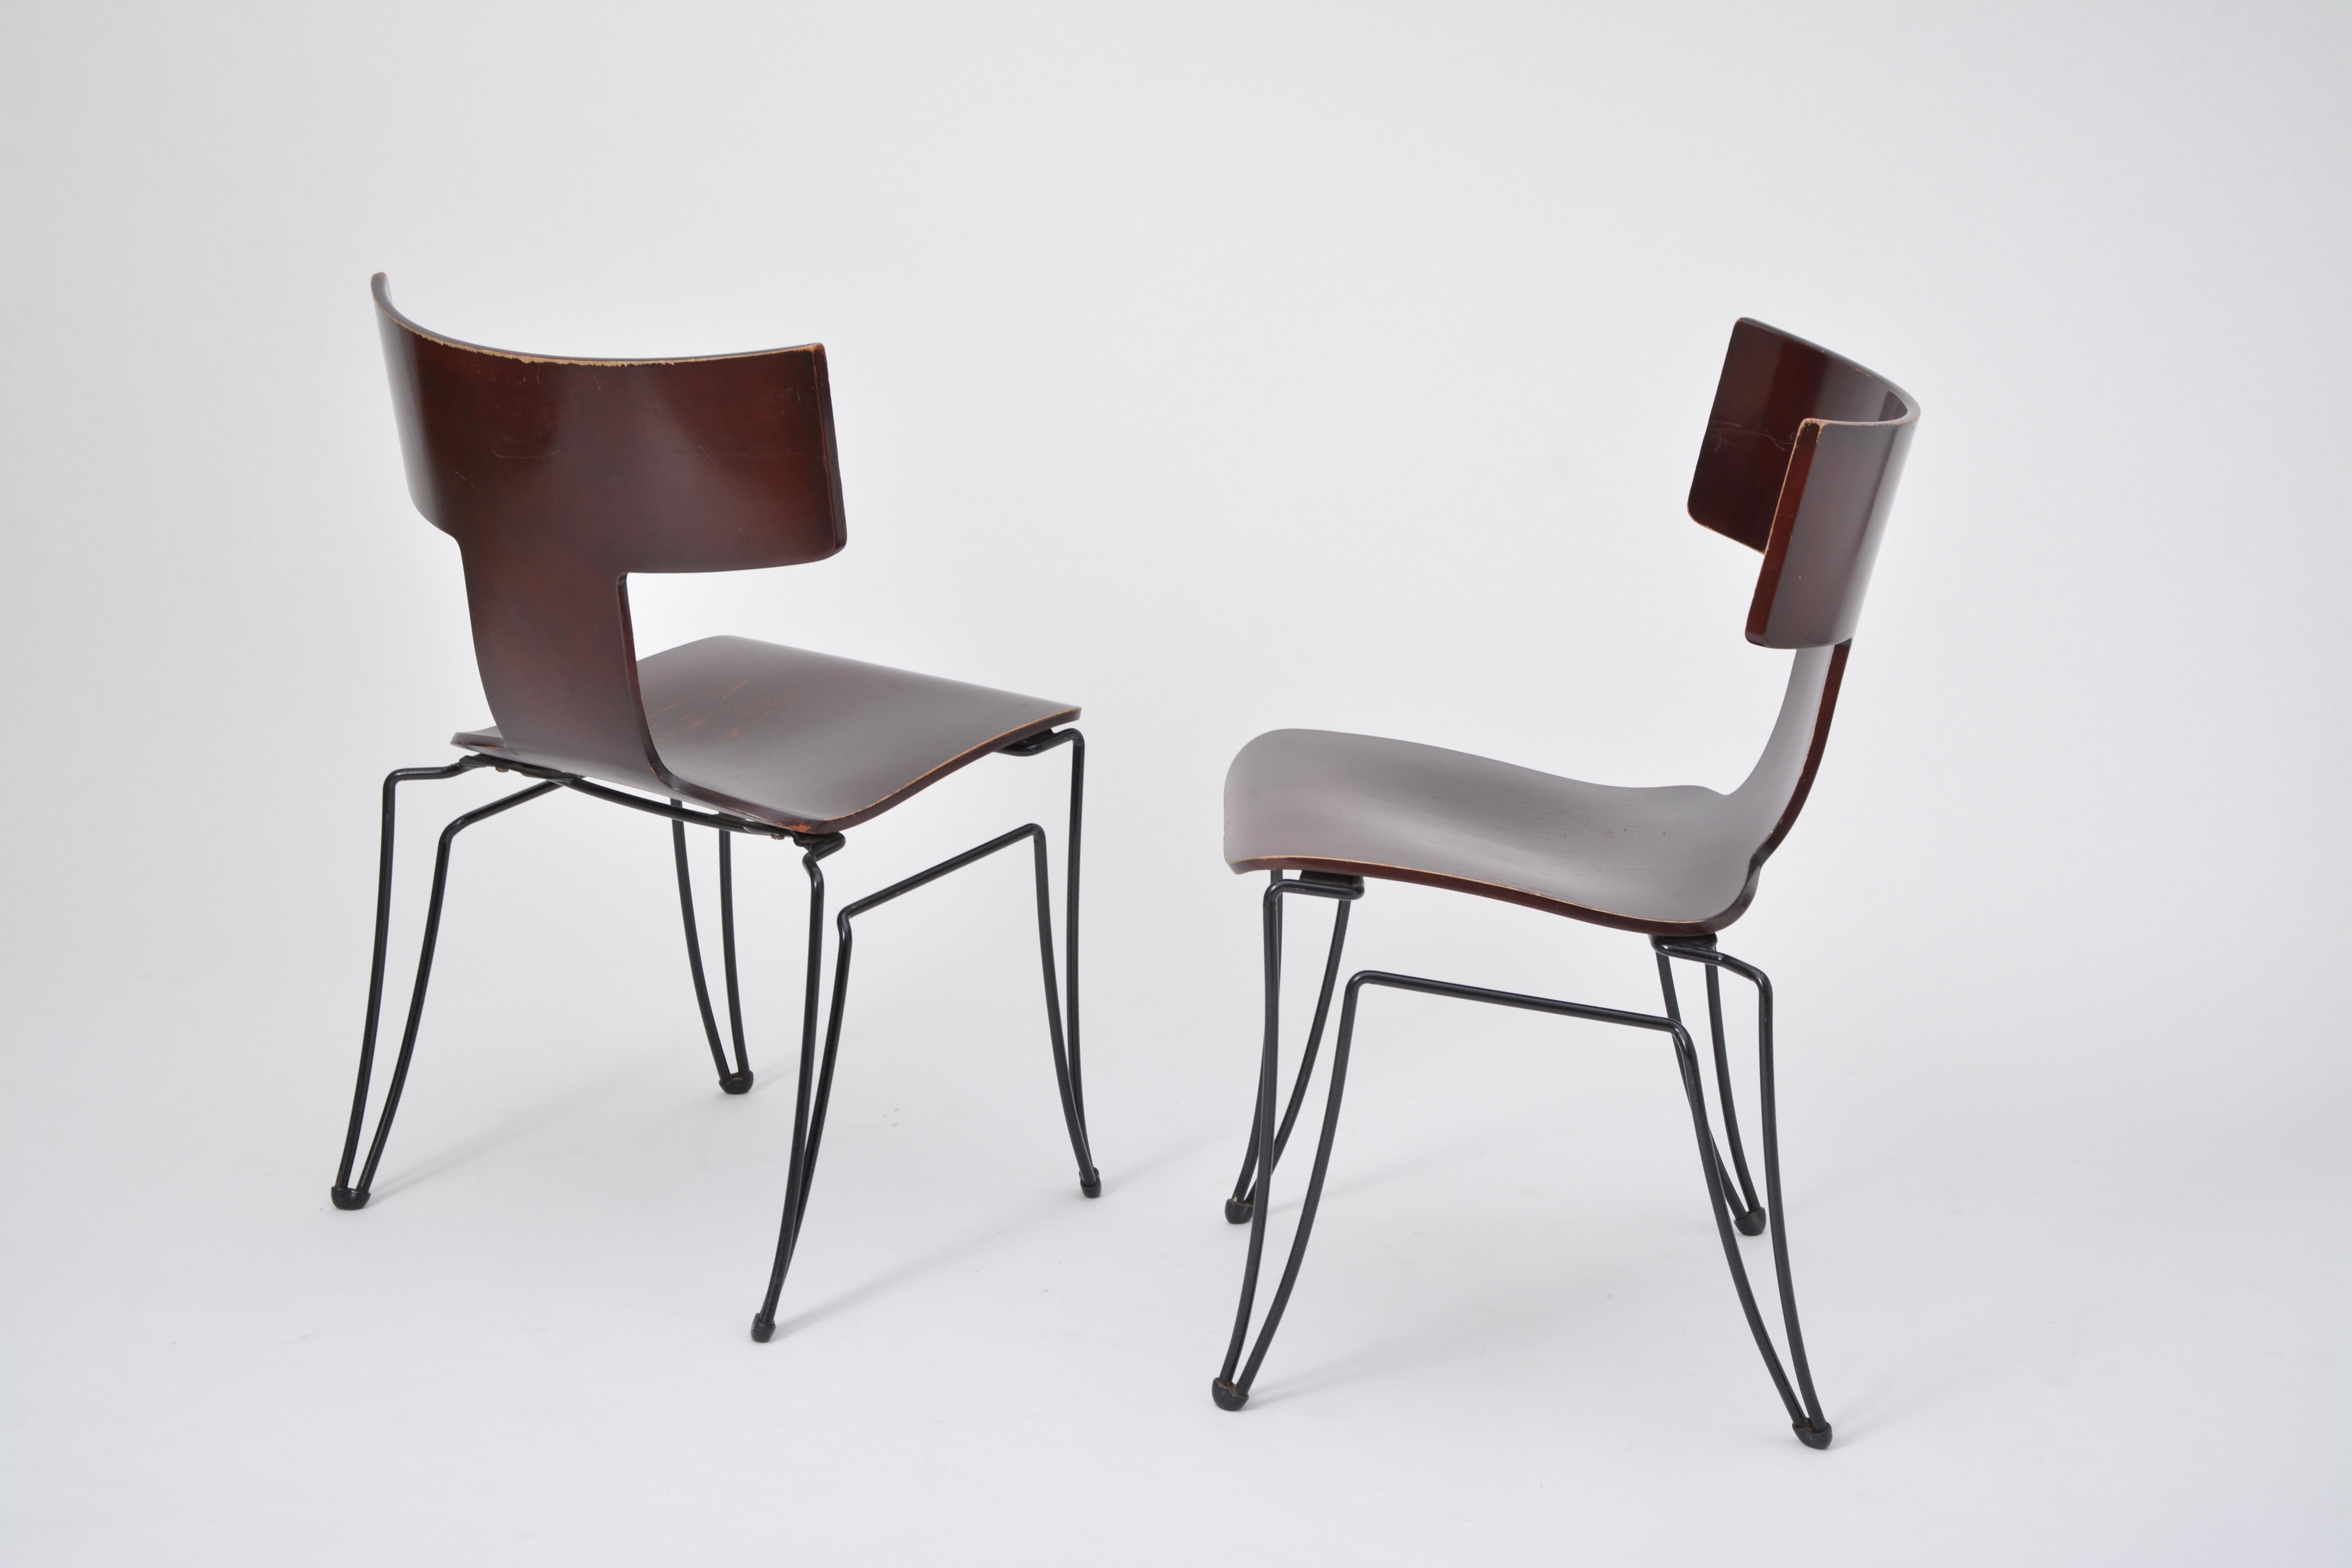 Cet ensemble de deux chaises a été produit par Donghia dans les années 1980. Le modèle Anziano a été conçu par John Hutton. Les structures sont réalisées en fil d'acier revêtu de noir, les sièges sont en placage de bois de hêtre moulé. Les chaises